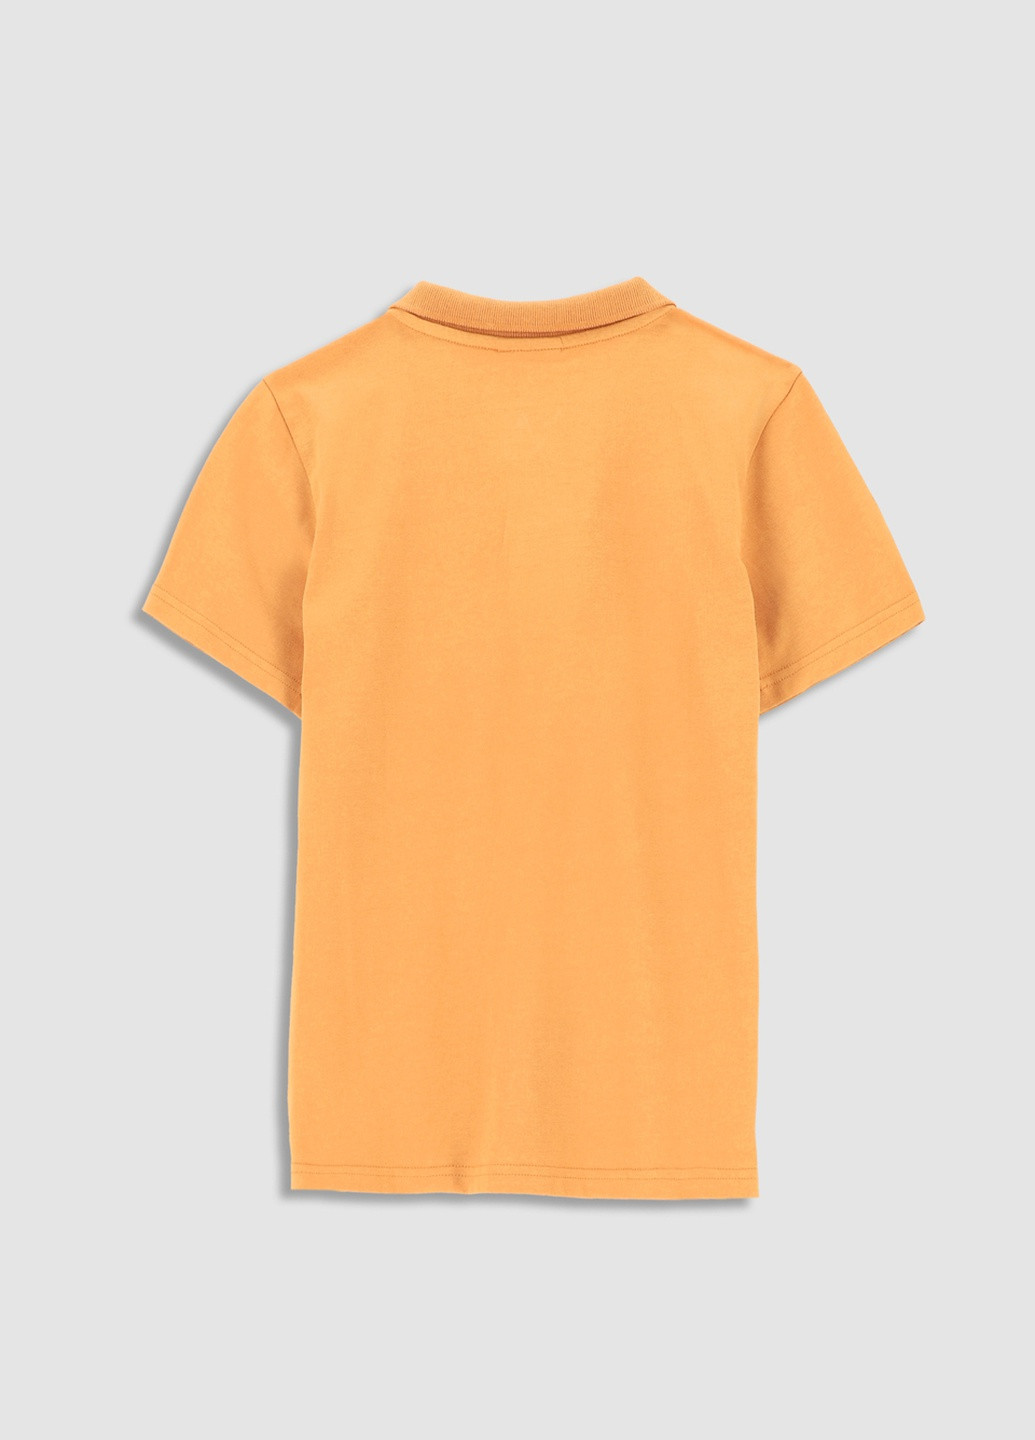 Оранжевая детская футболка-поло для мальчика Coccodrillo